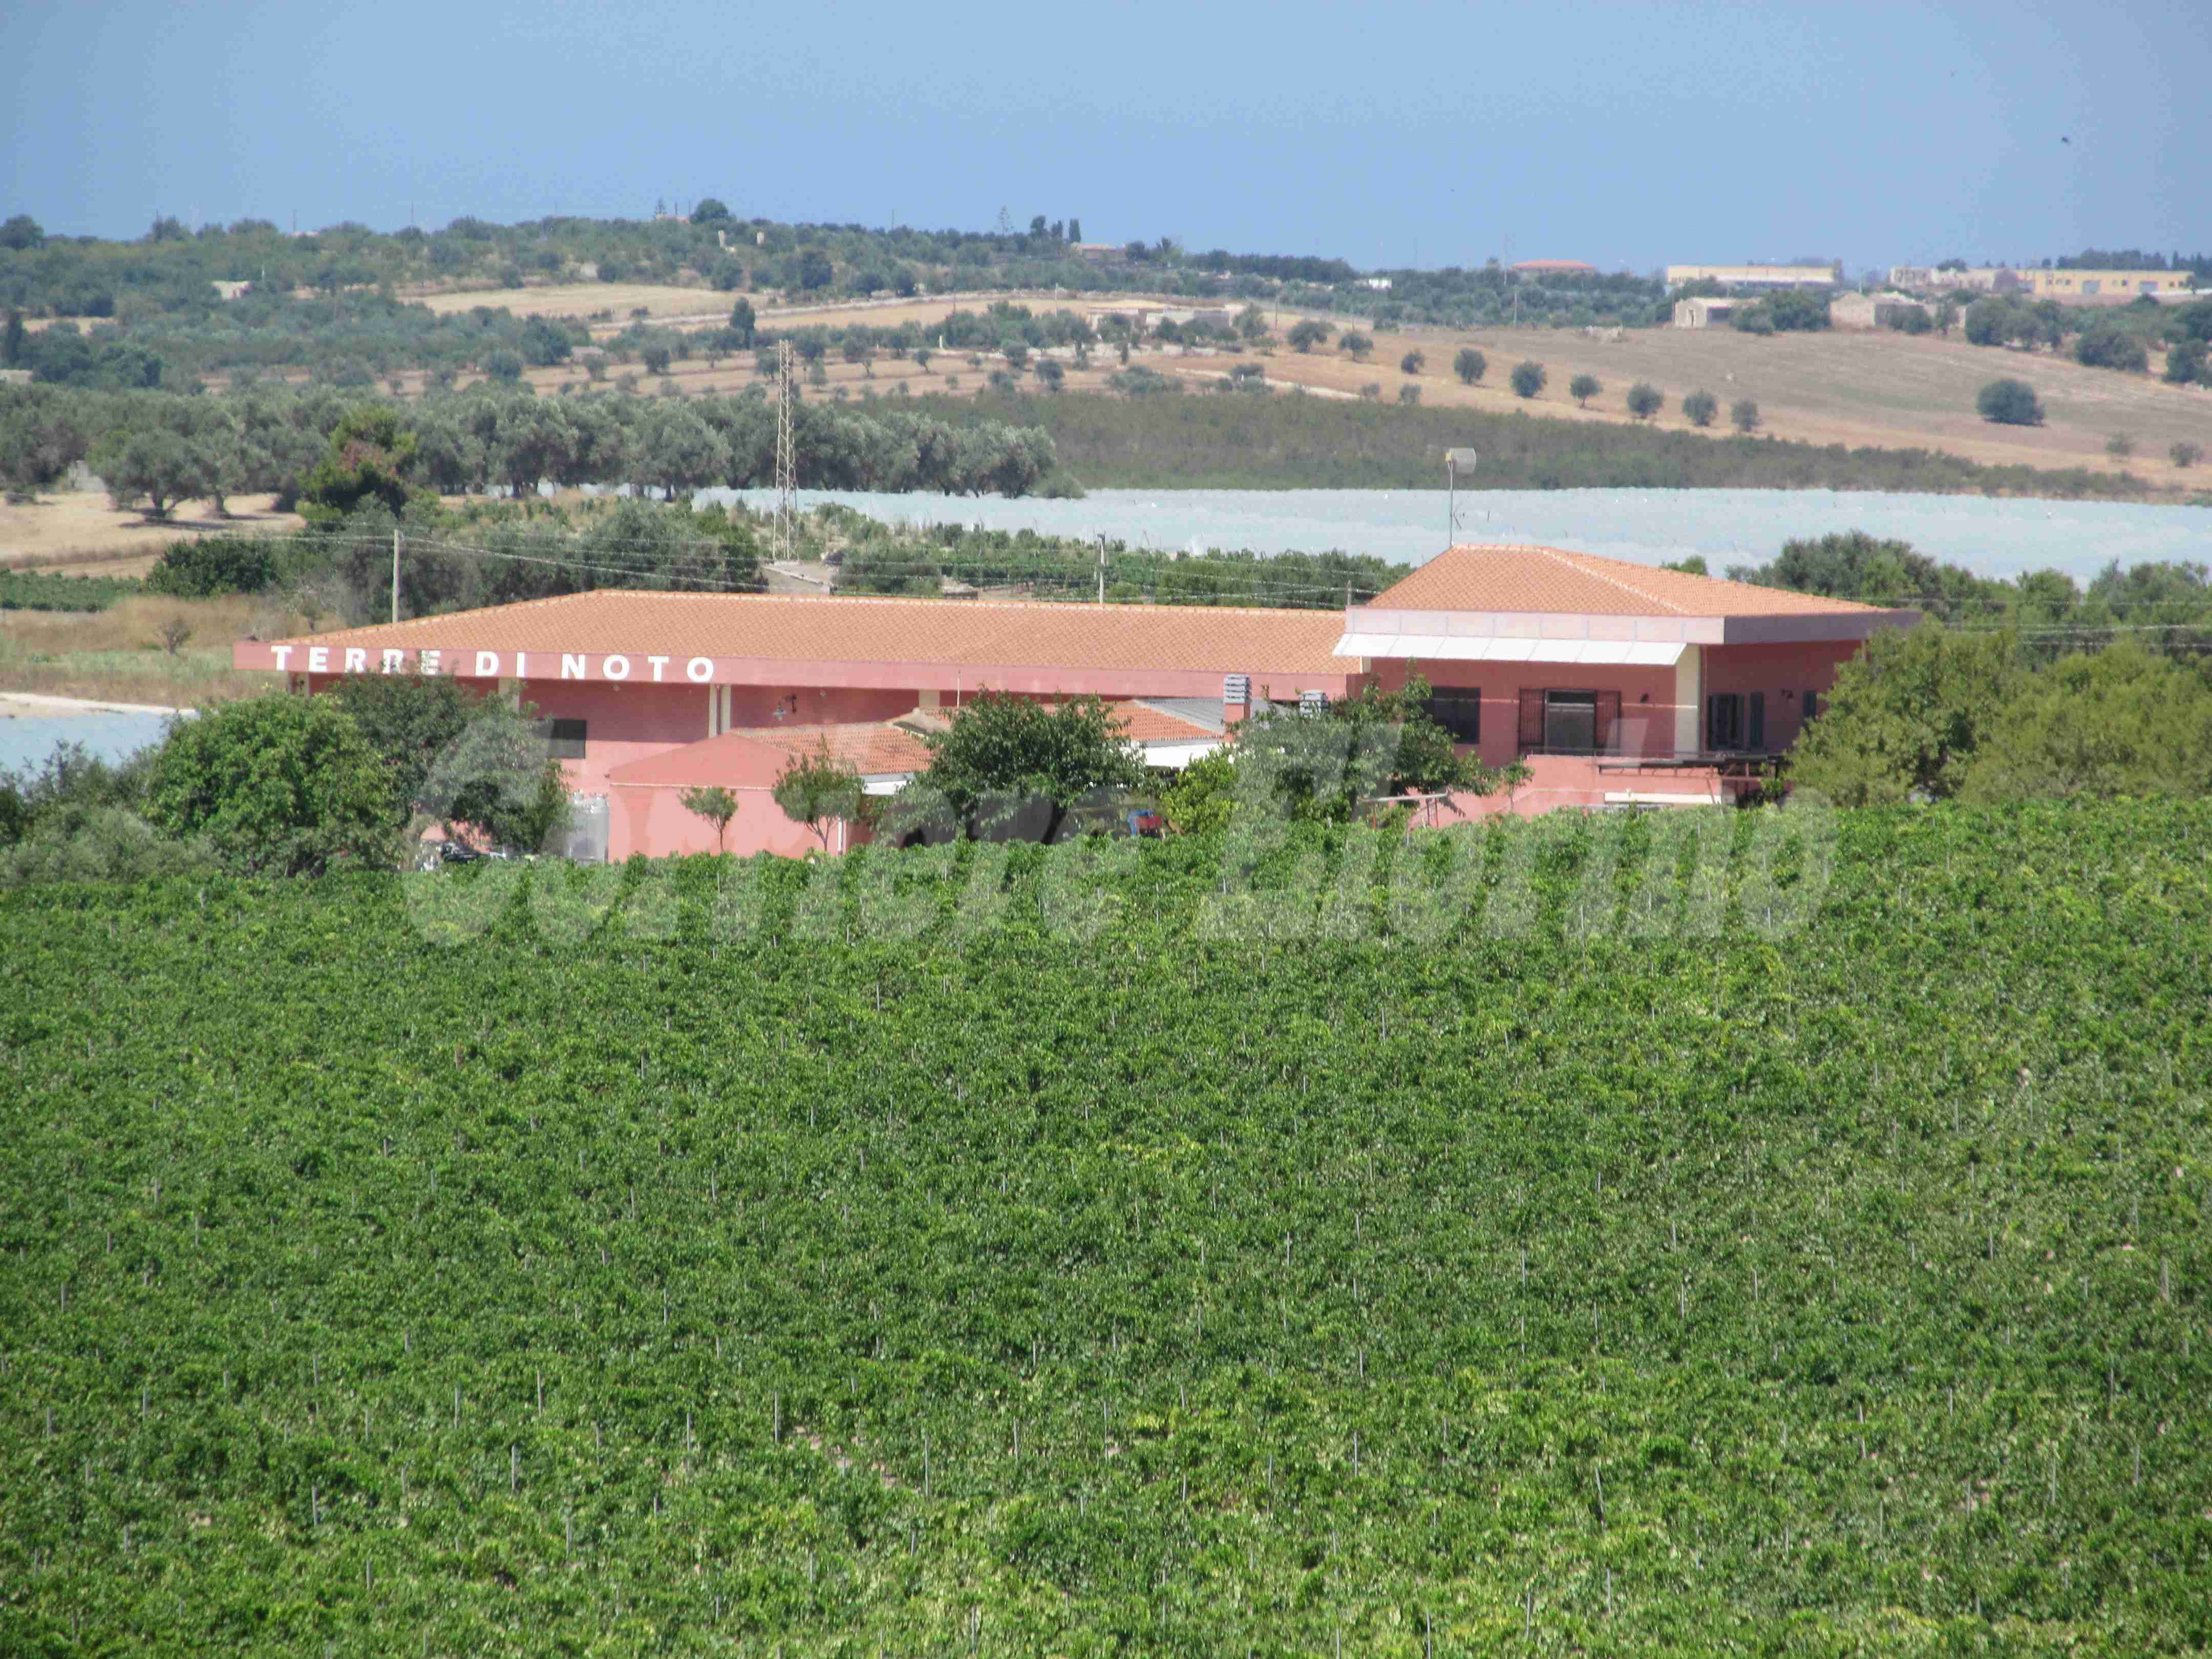 Il 3 agosto “Terre di Noto” offre una giornata informativa sulla “biodiversità dei vitigni regionali”